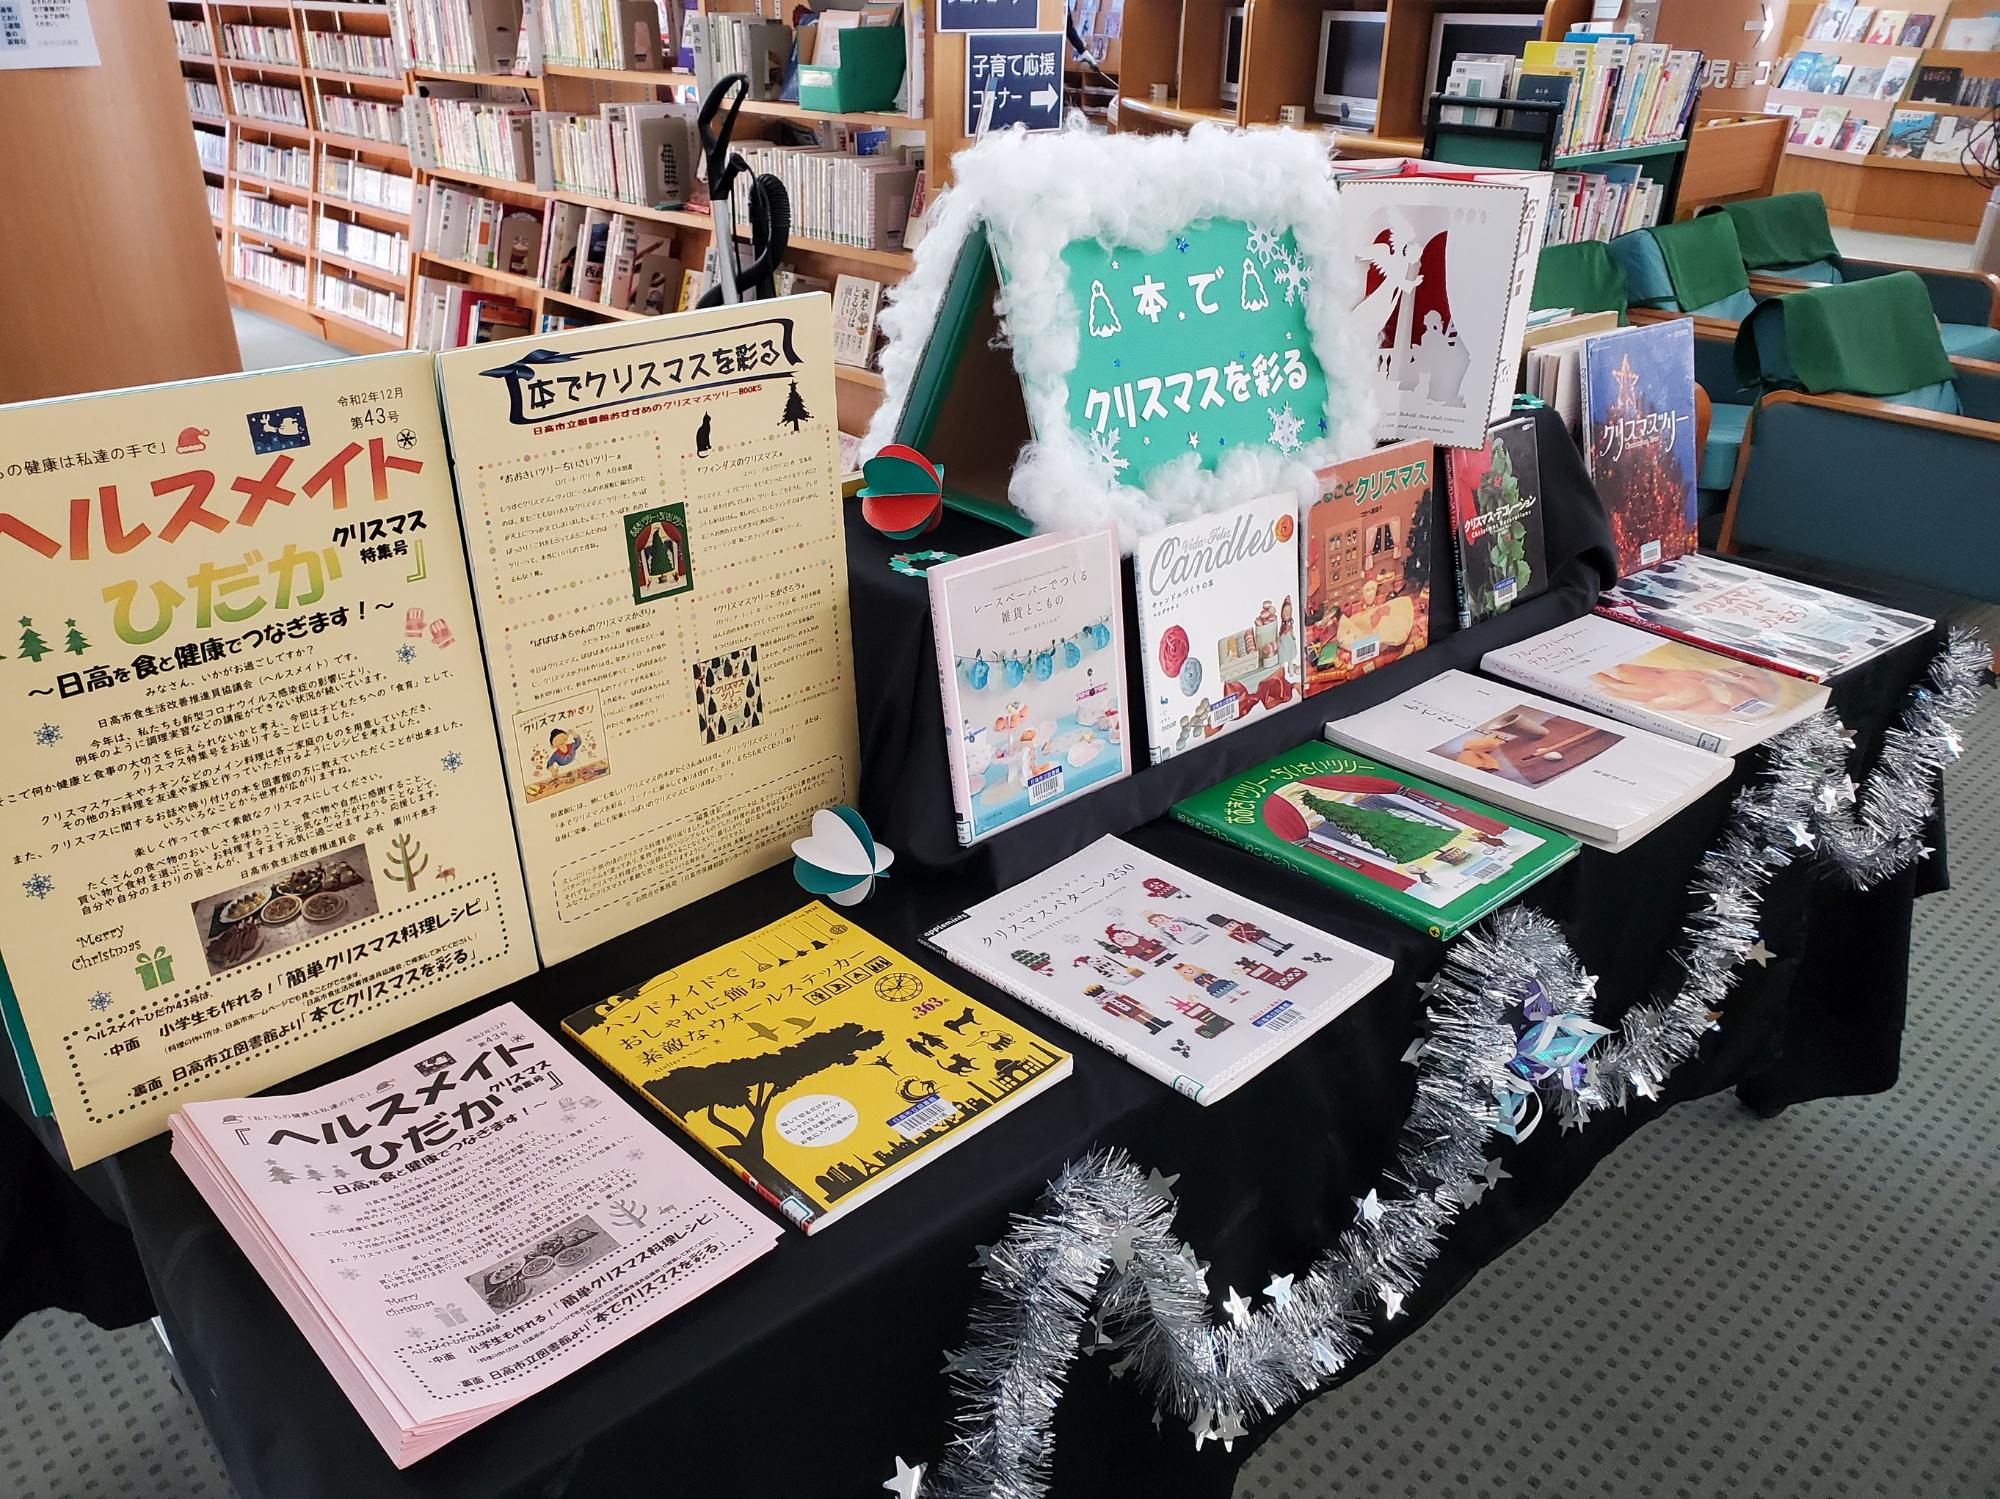 日高市立図書館展示「本でクリスマスを彩る」